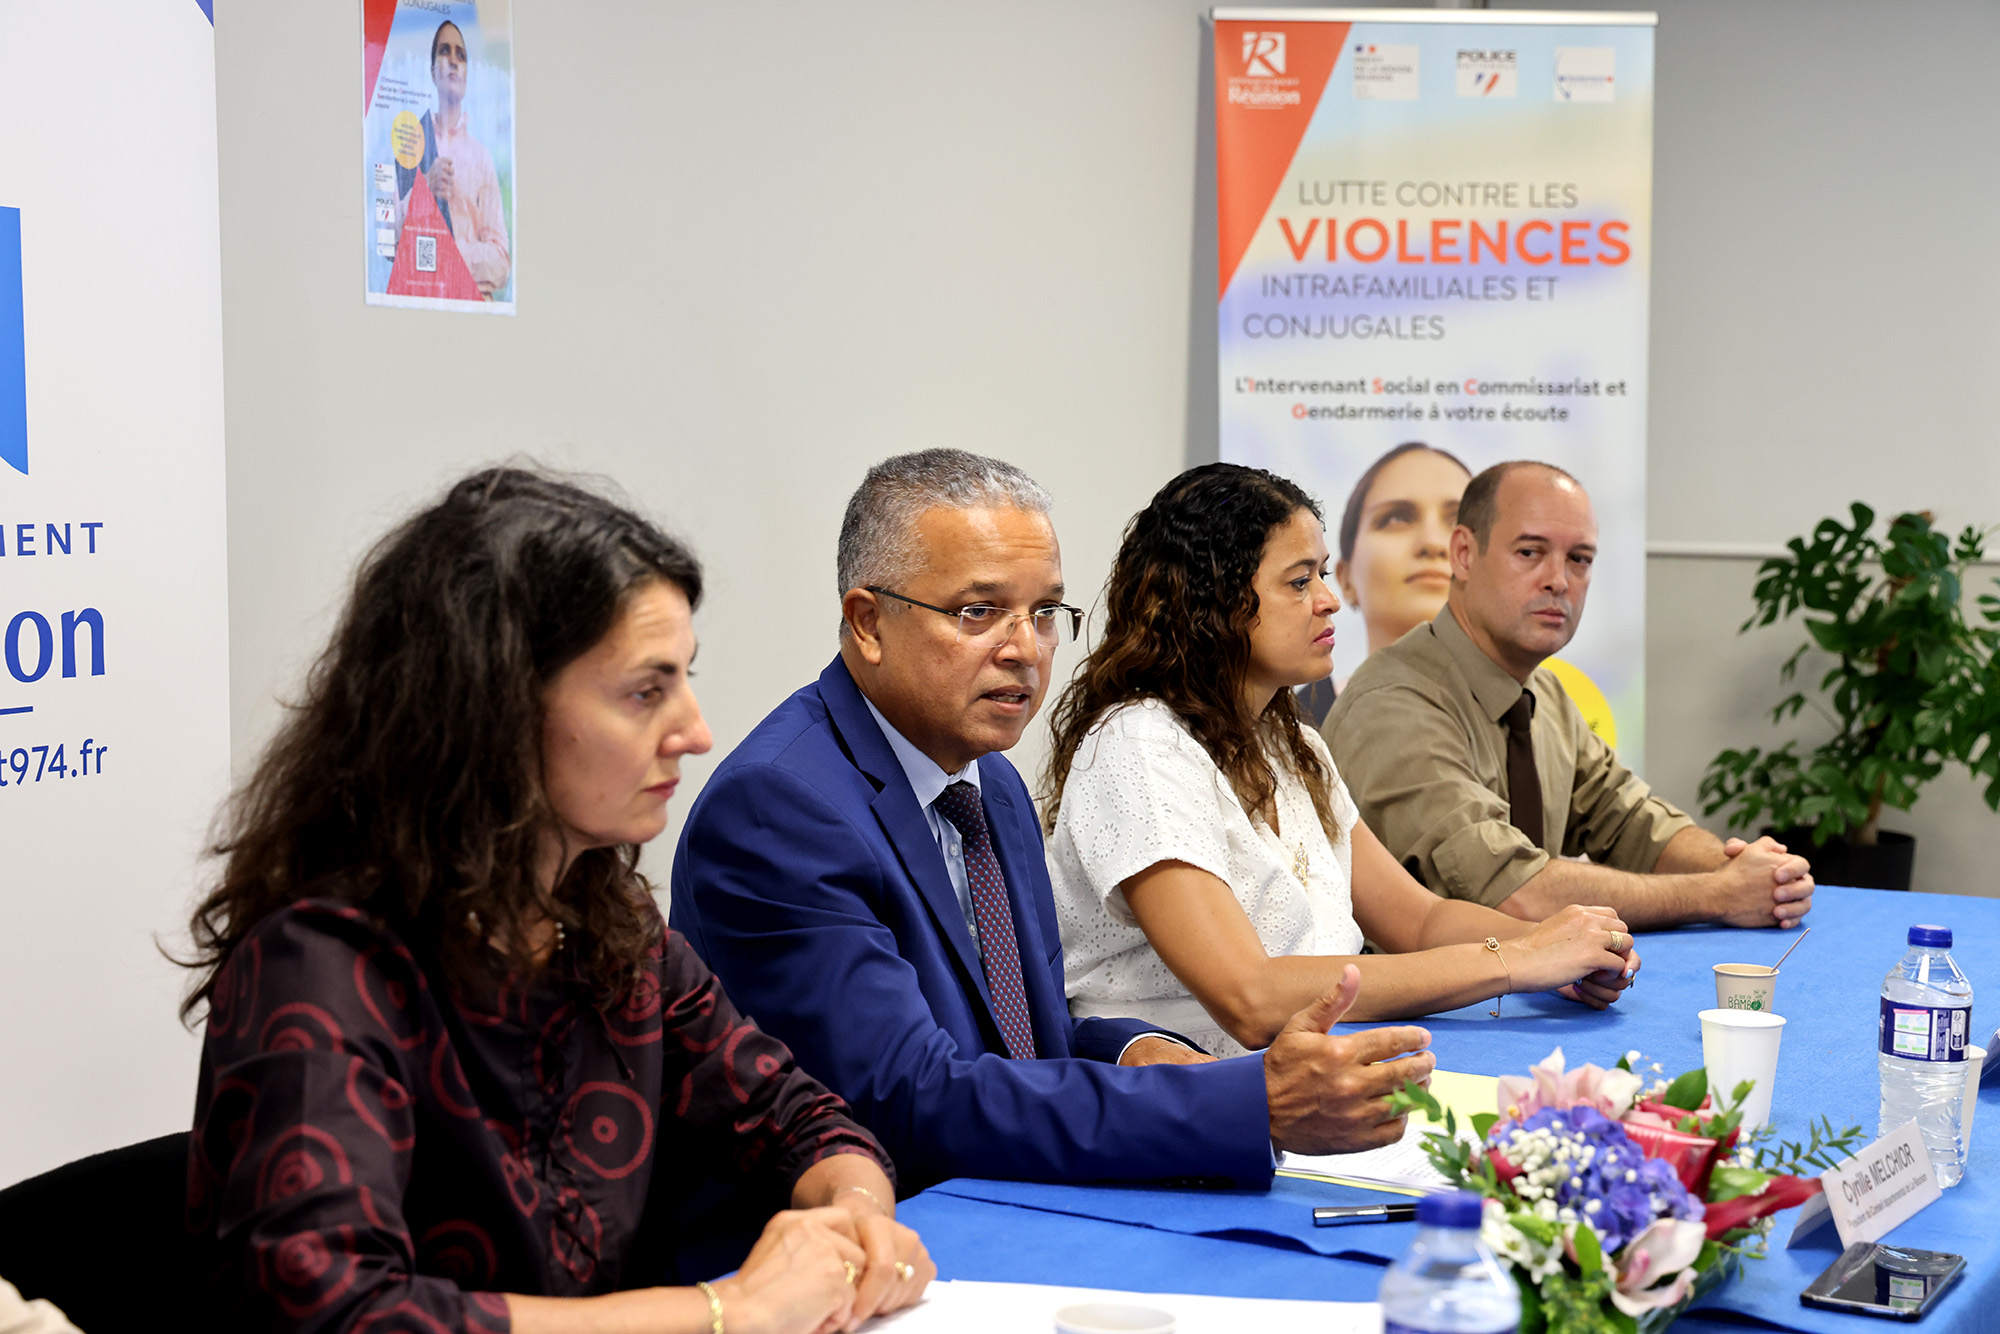 Intervenant Social en Commissariat et Gendarmerie : Un maillon essentiel dans la lutte contre les VIF